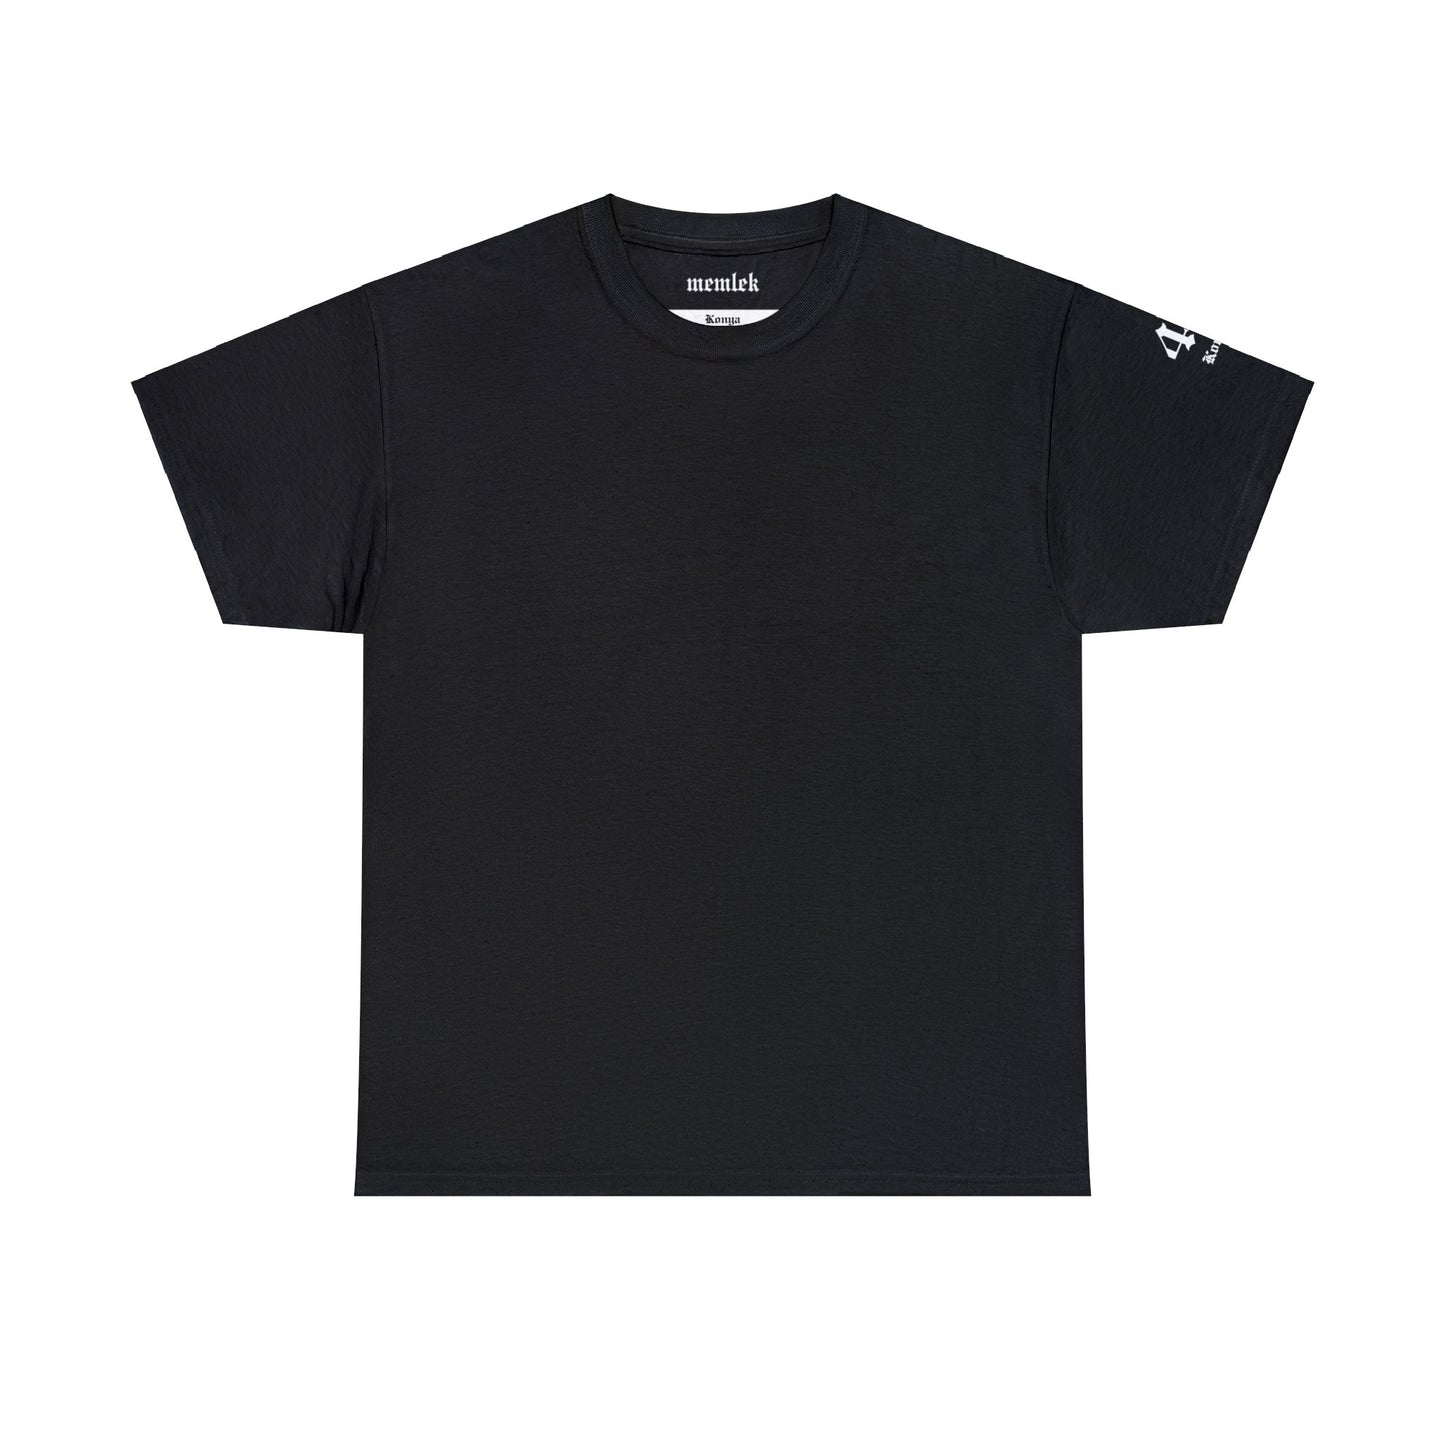 Şehirim - 42 Konya - T-Shirt - Back Print - Black